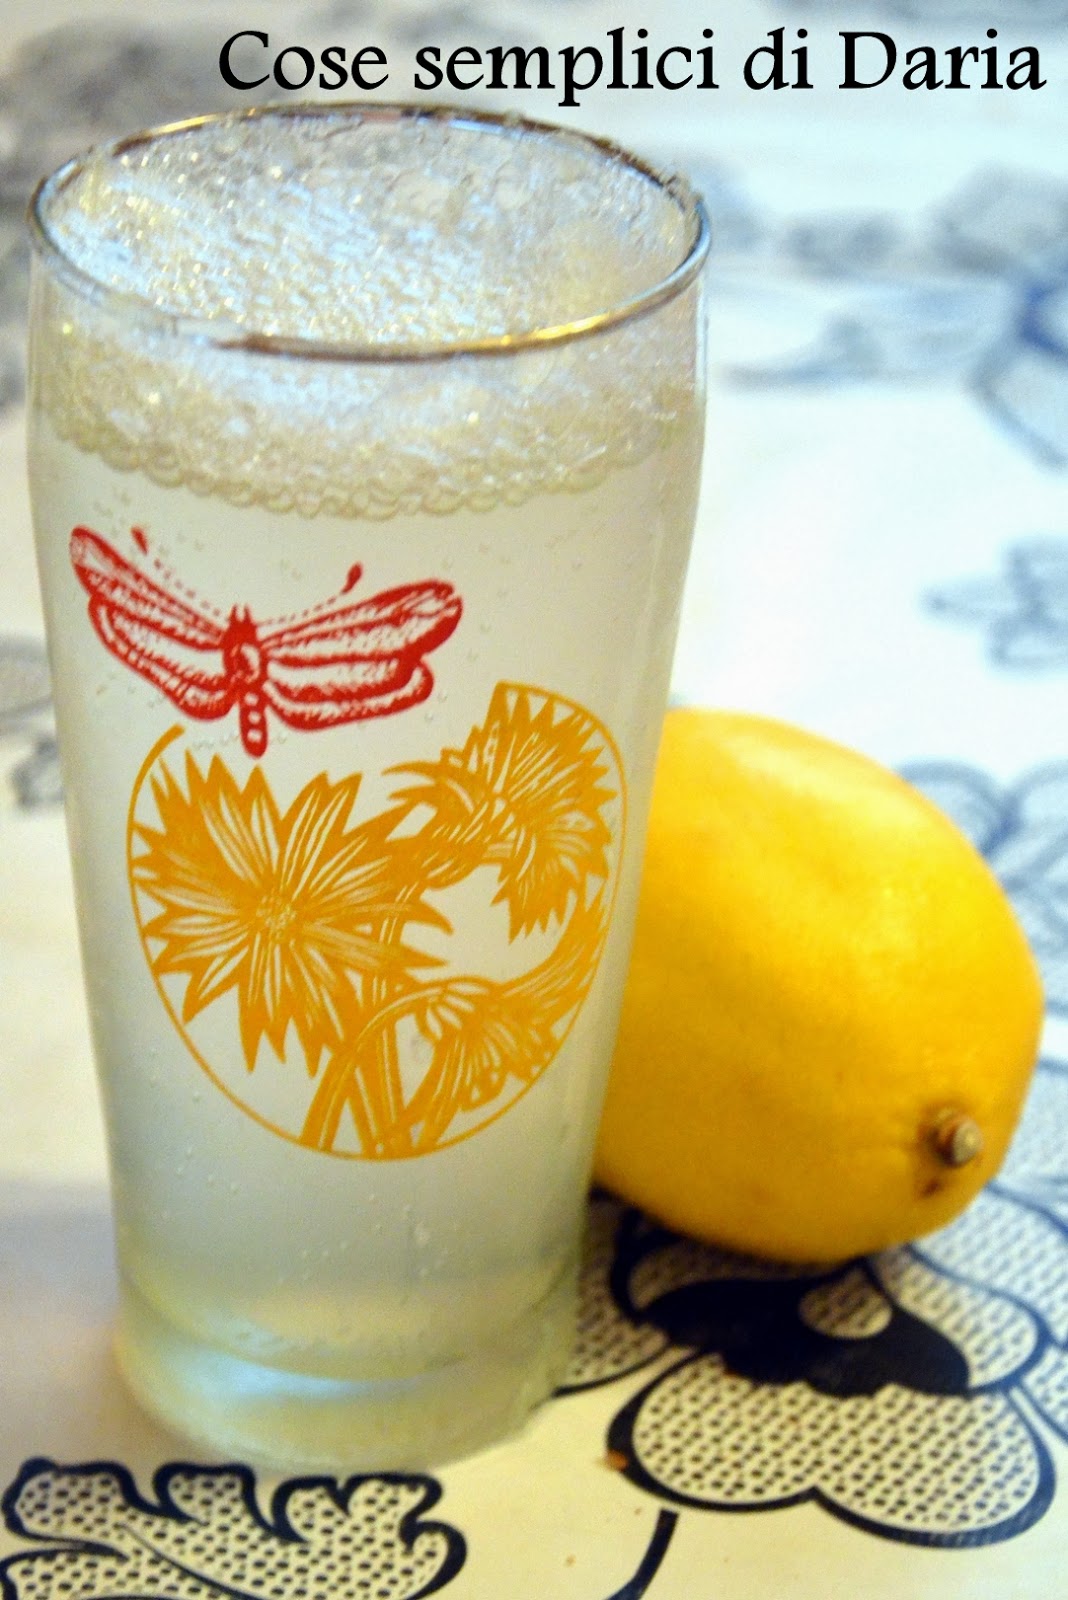 Сицилийский лимонад. Соленый лимонад. Лимонад из Сицилии. Напиток с солью. Вода с лимоном и солью